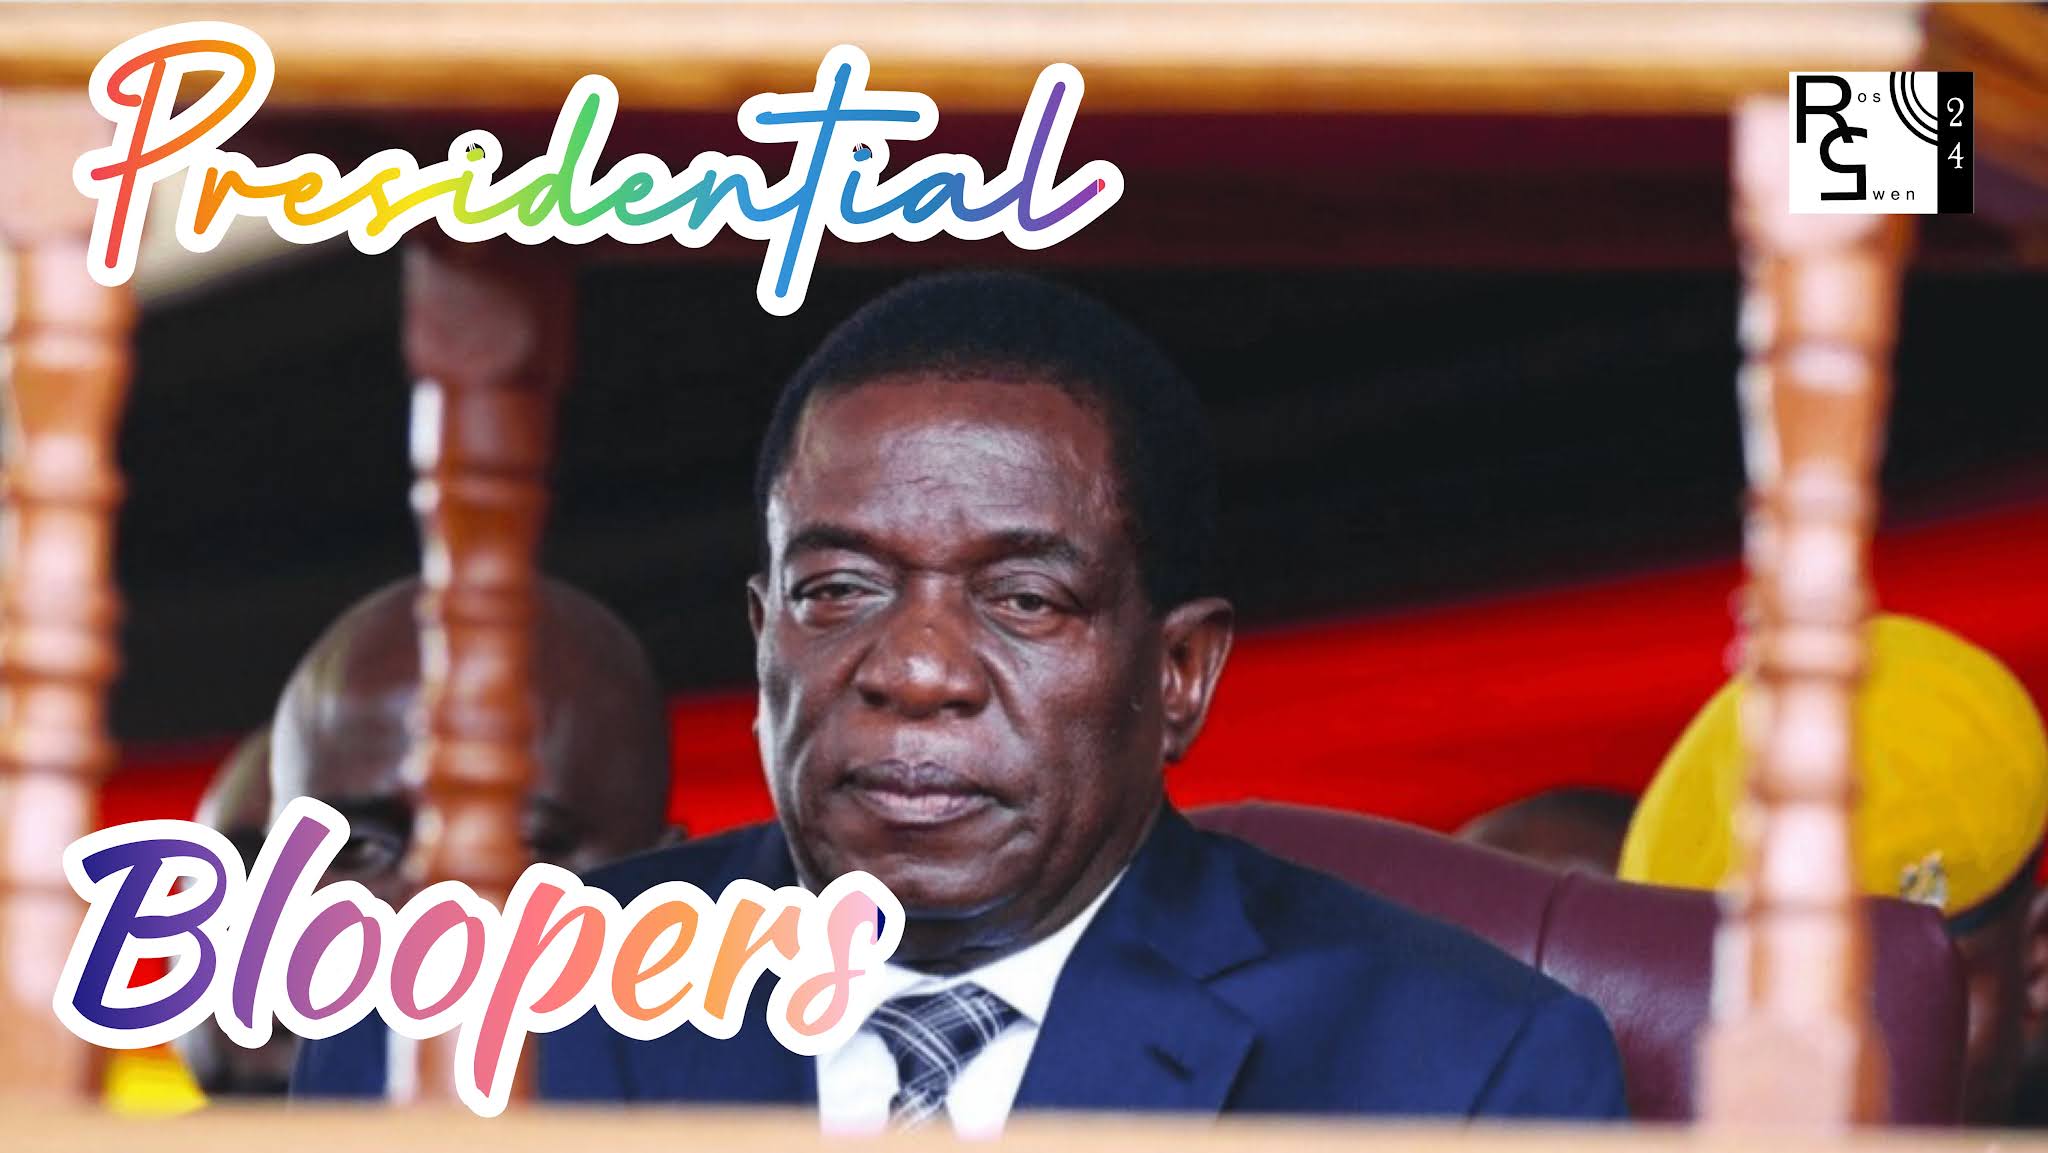 Mnangagwa’s Presidential Blooper Goes Viral